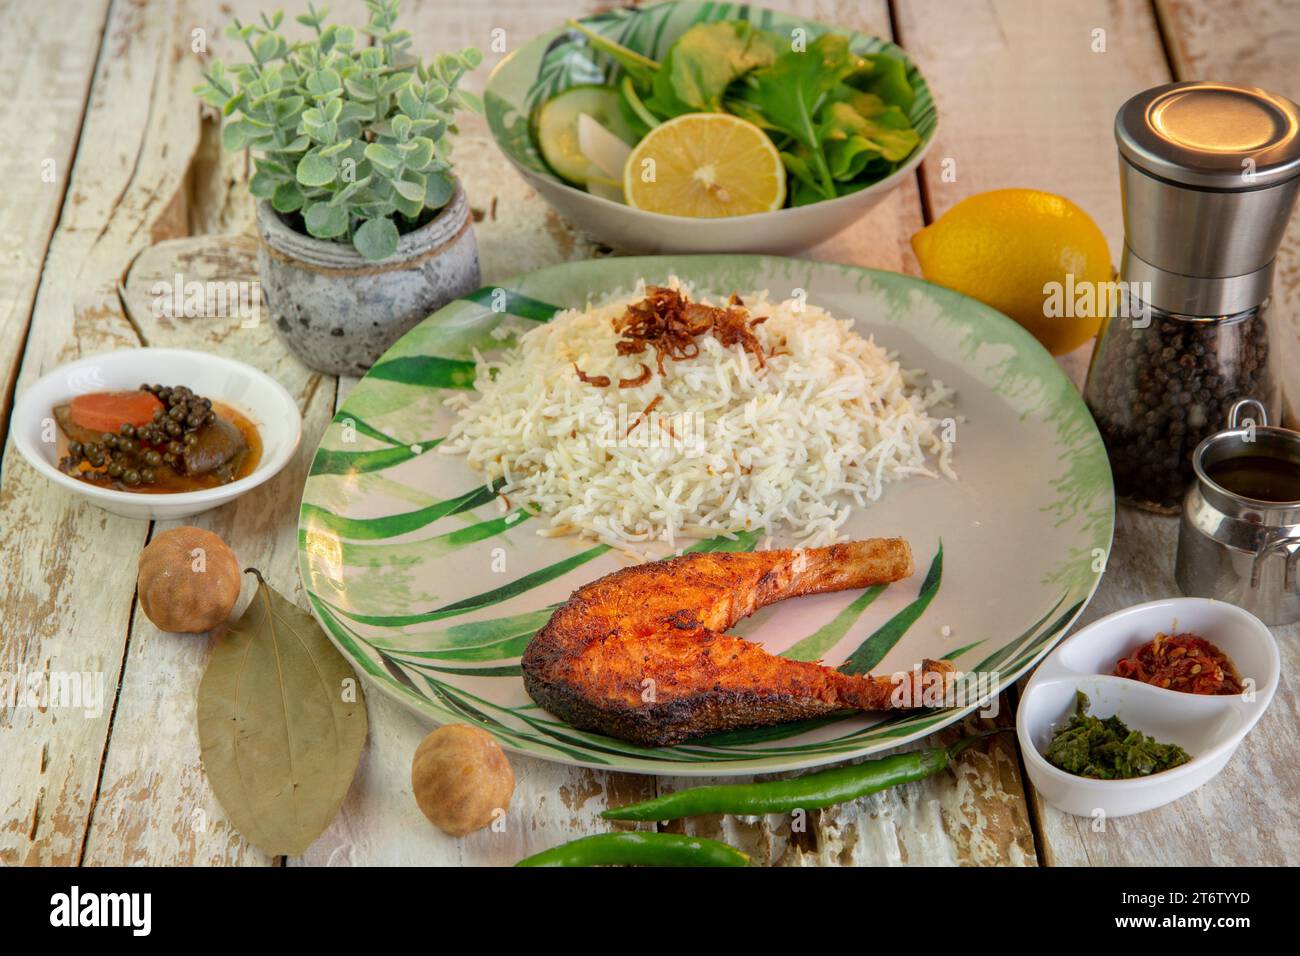 Une assiette blanche remplie d'une variété d'aliments, y compris de la viande grillée, du riz cuit et divers légumes sautés Banque D'Images